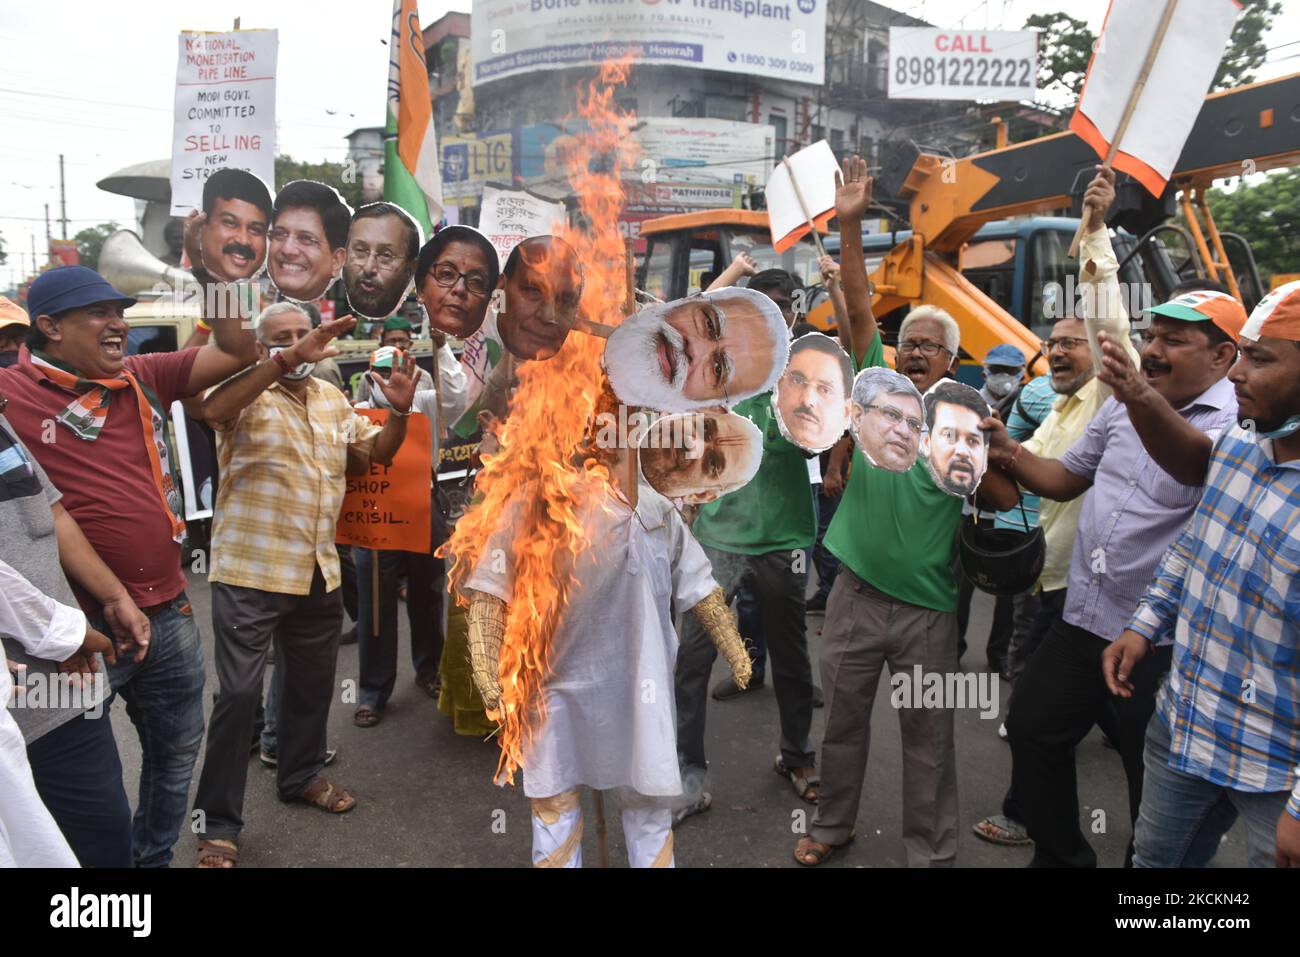 Les membres du parti du Congrès brûlent une effigie lors d'une manifestation contre le gouvernement du BJP et ont appelé à un boycott total du NMP (pipeline national de monétisation) à Kolkata, en Inde, sur 2 septembre 2021 (photo de Sukhomoy Sen/NurPhoto) Banque D'Images